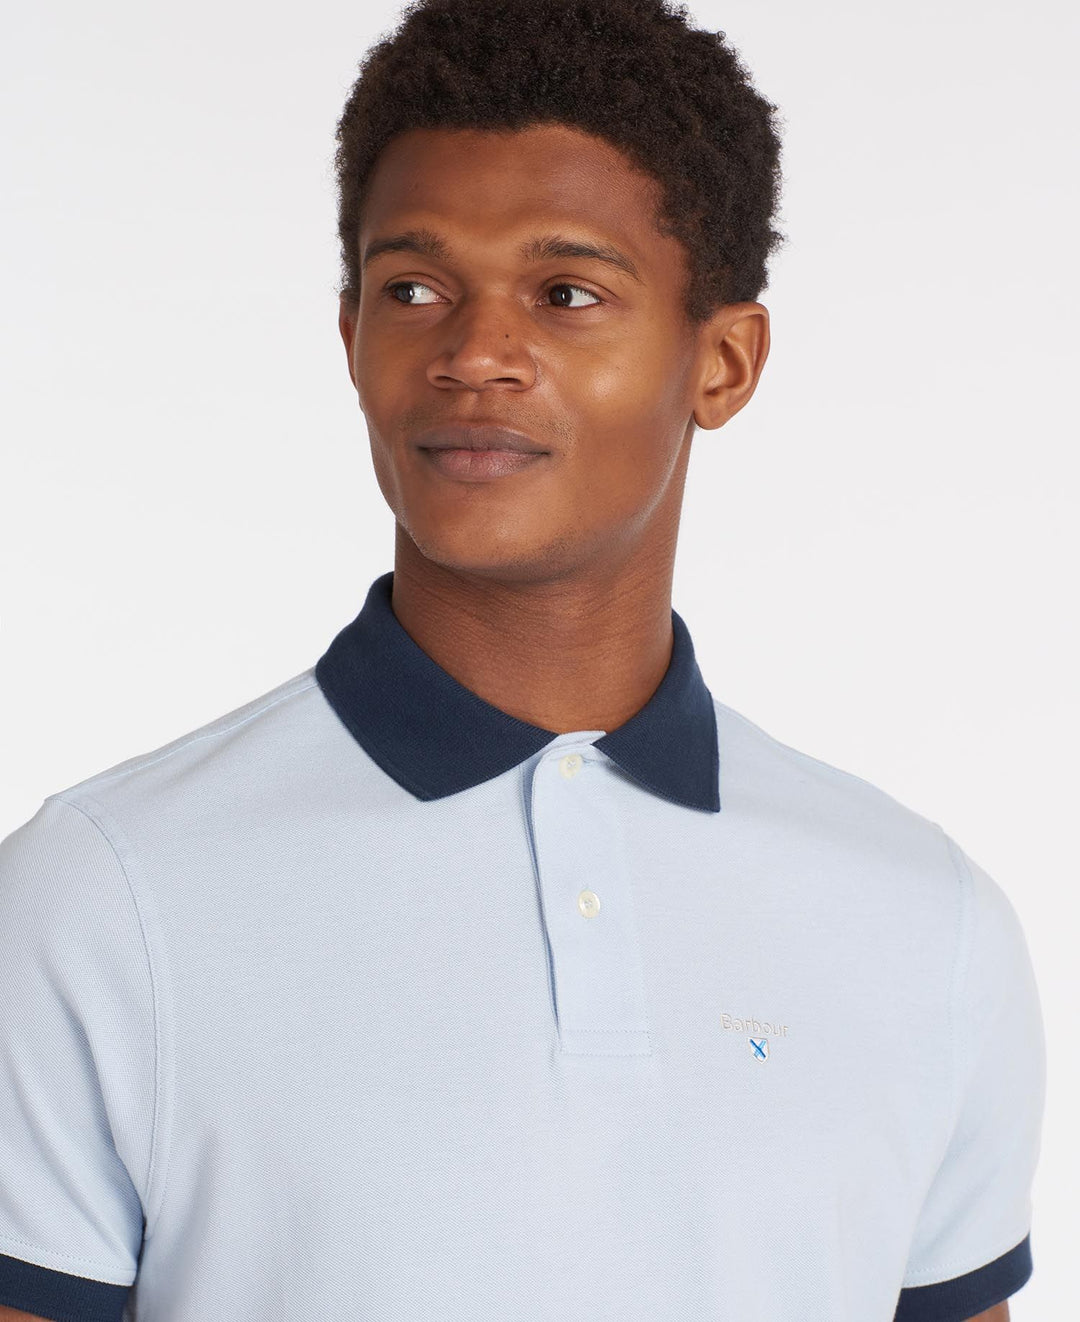 BARBOUR  Lynton Polo Shirt/ Polo Majica MML0887